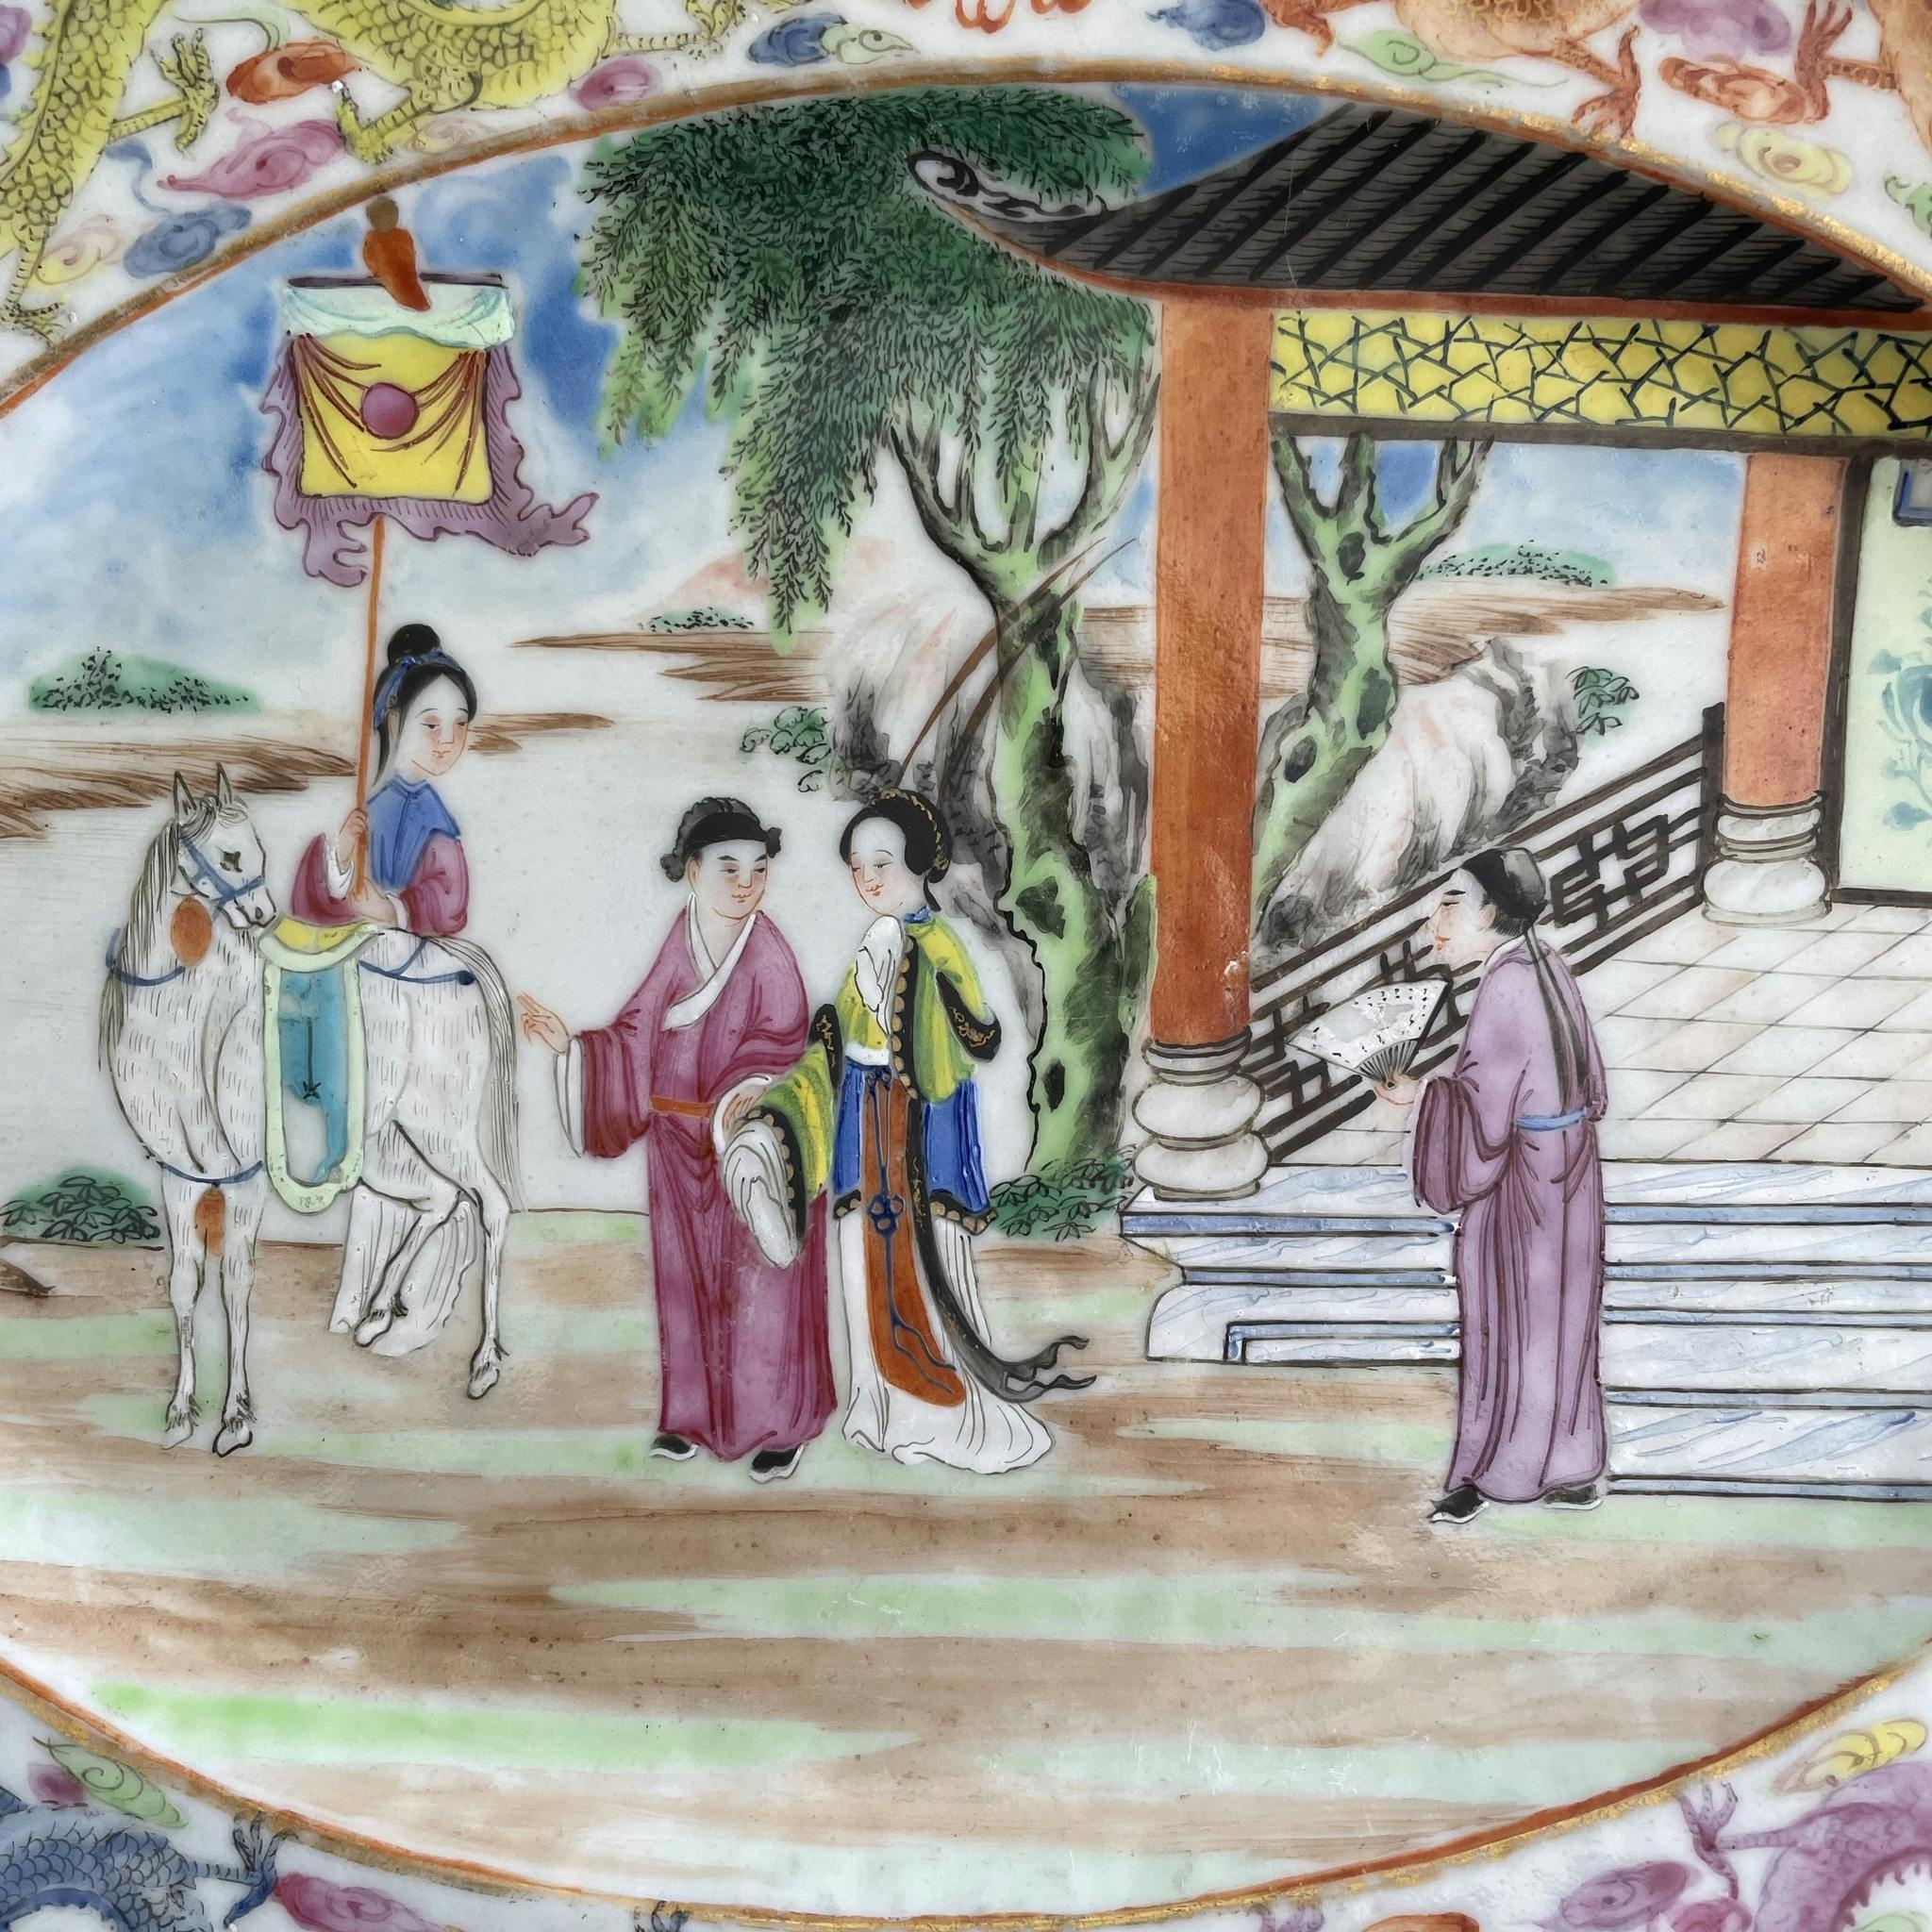 Antique Chinese rose mandarin platter, Jiaqing / Daoguang #1432